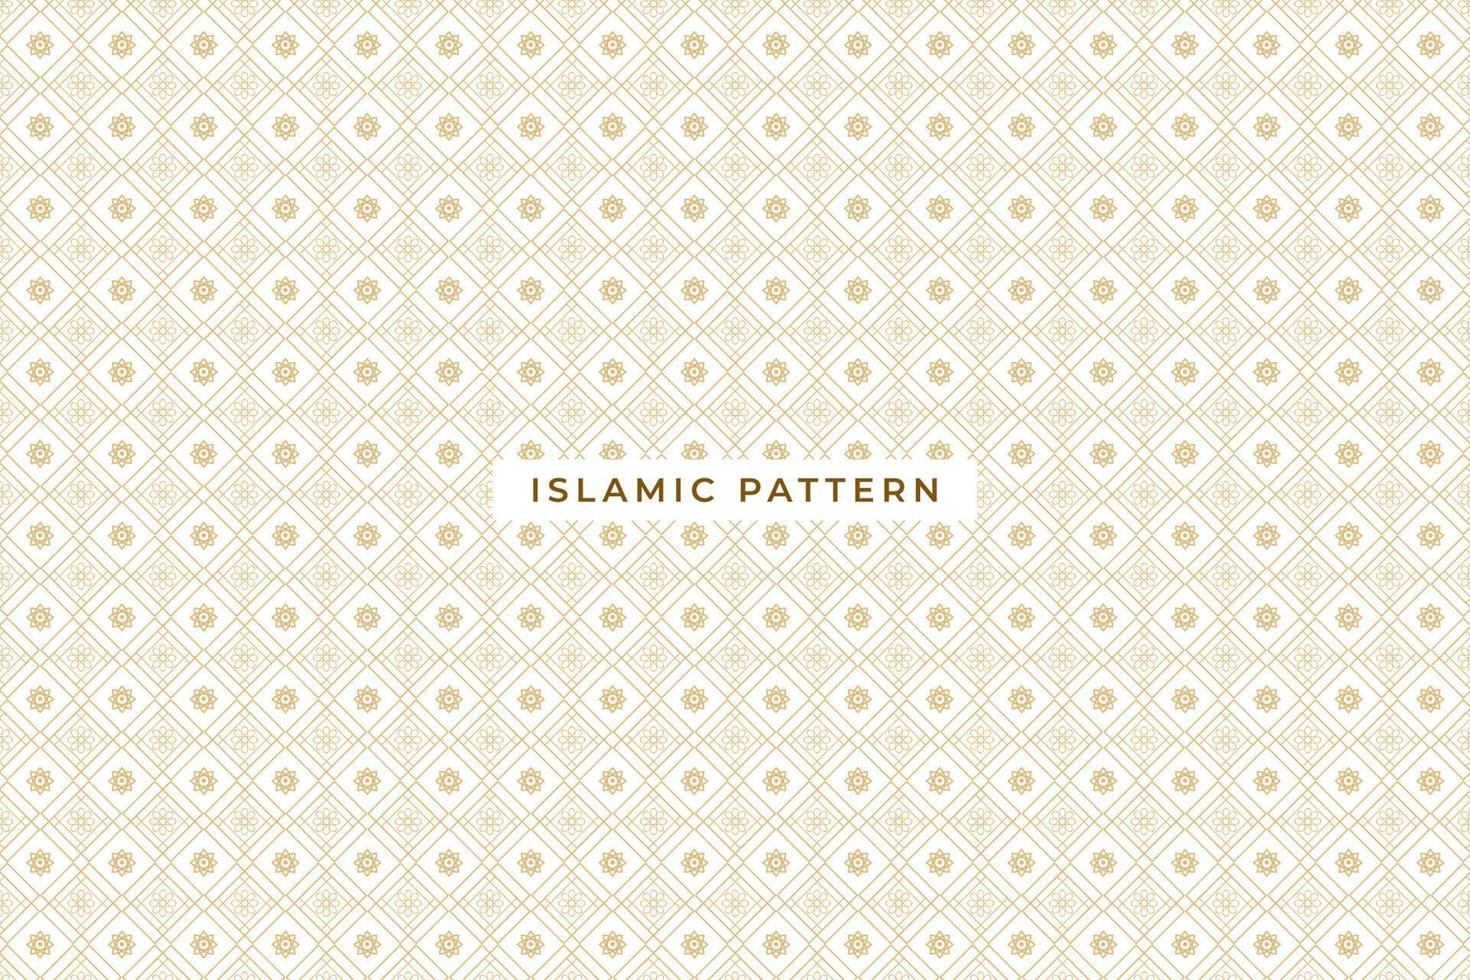 islamiskt mönster, geometriska konturmönster, vektor islamisk prydnad, bakgrund.